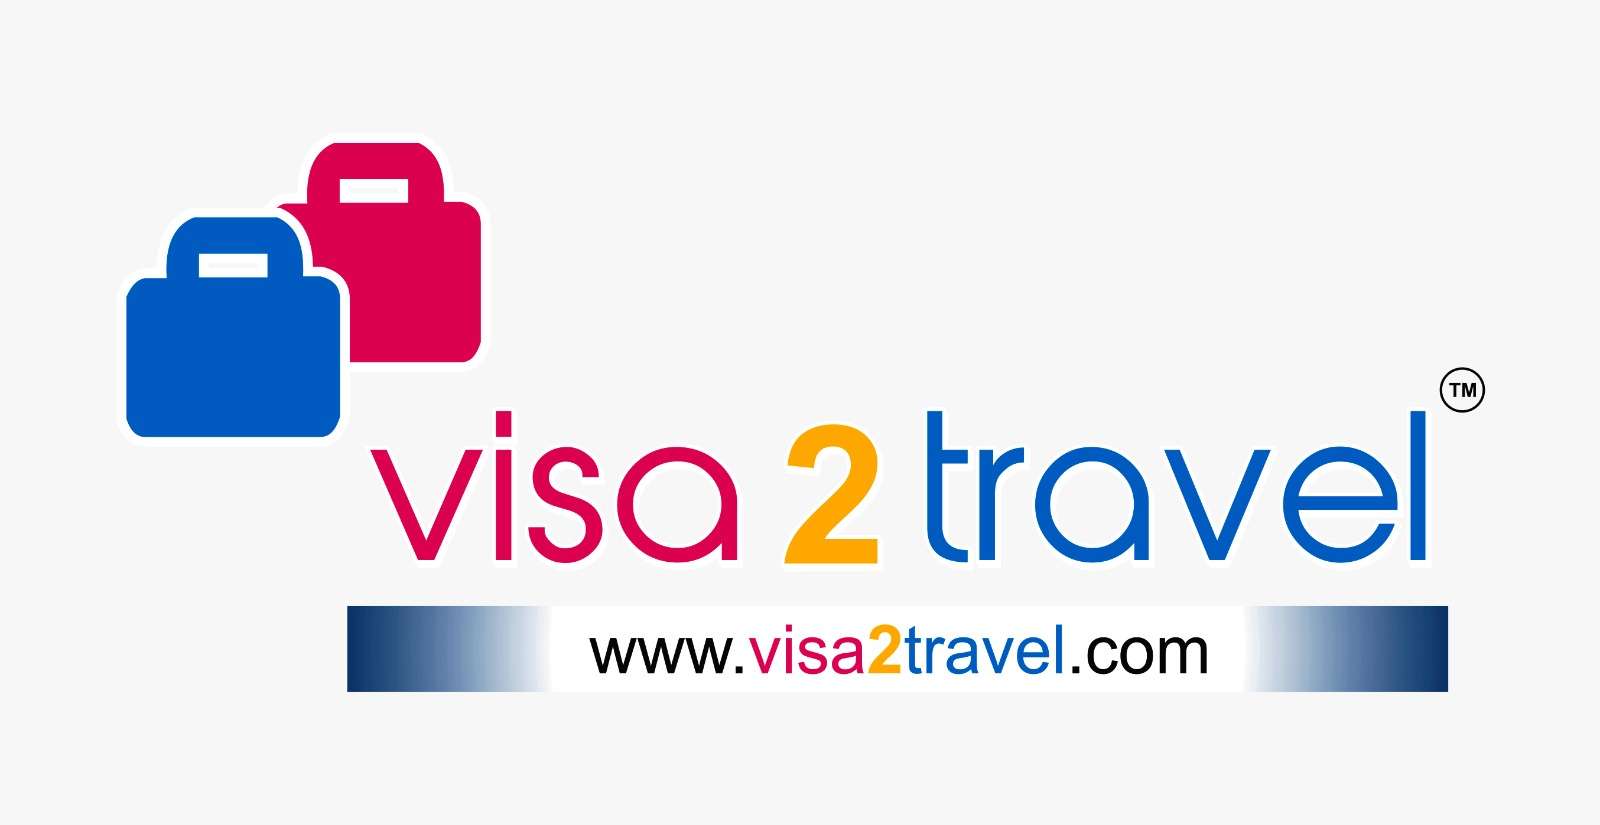 Visa 2 Travel